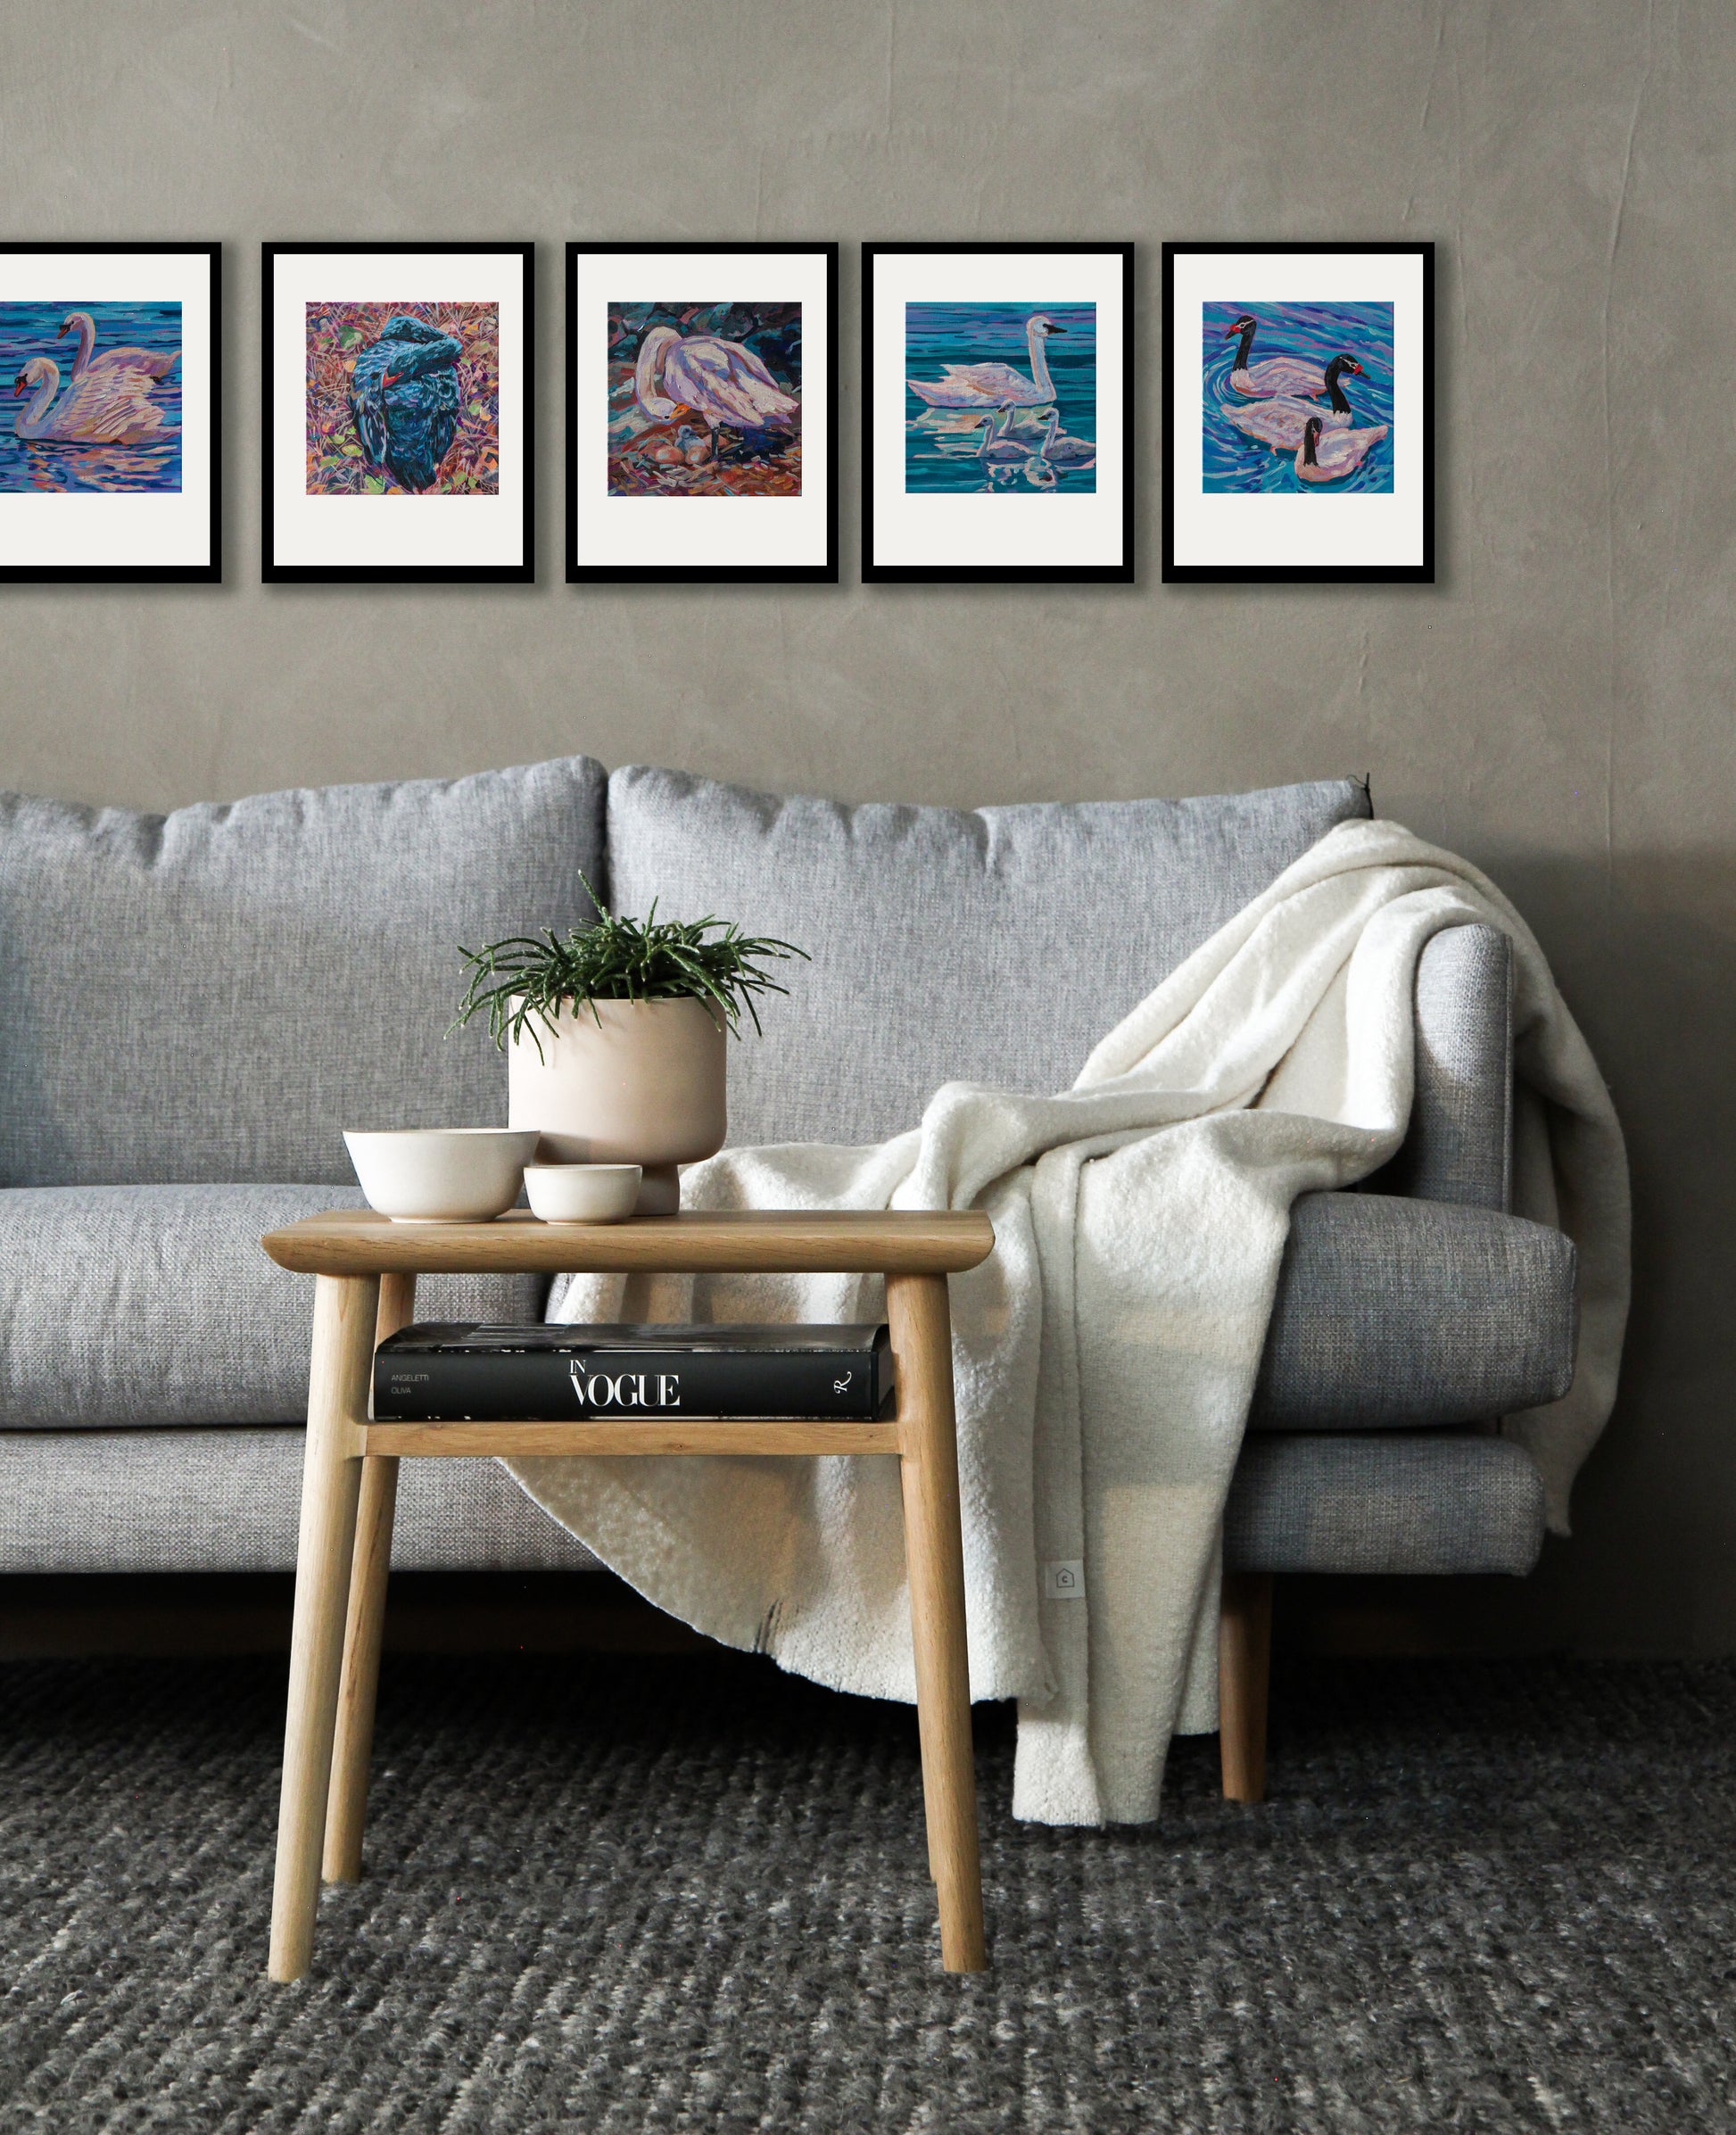 5 sawan paintings framed in living room